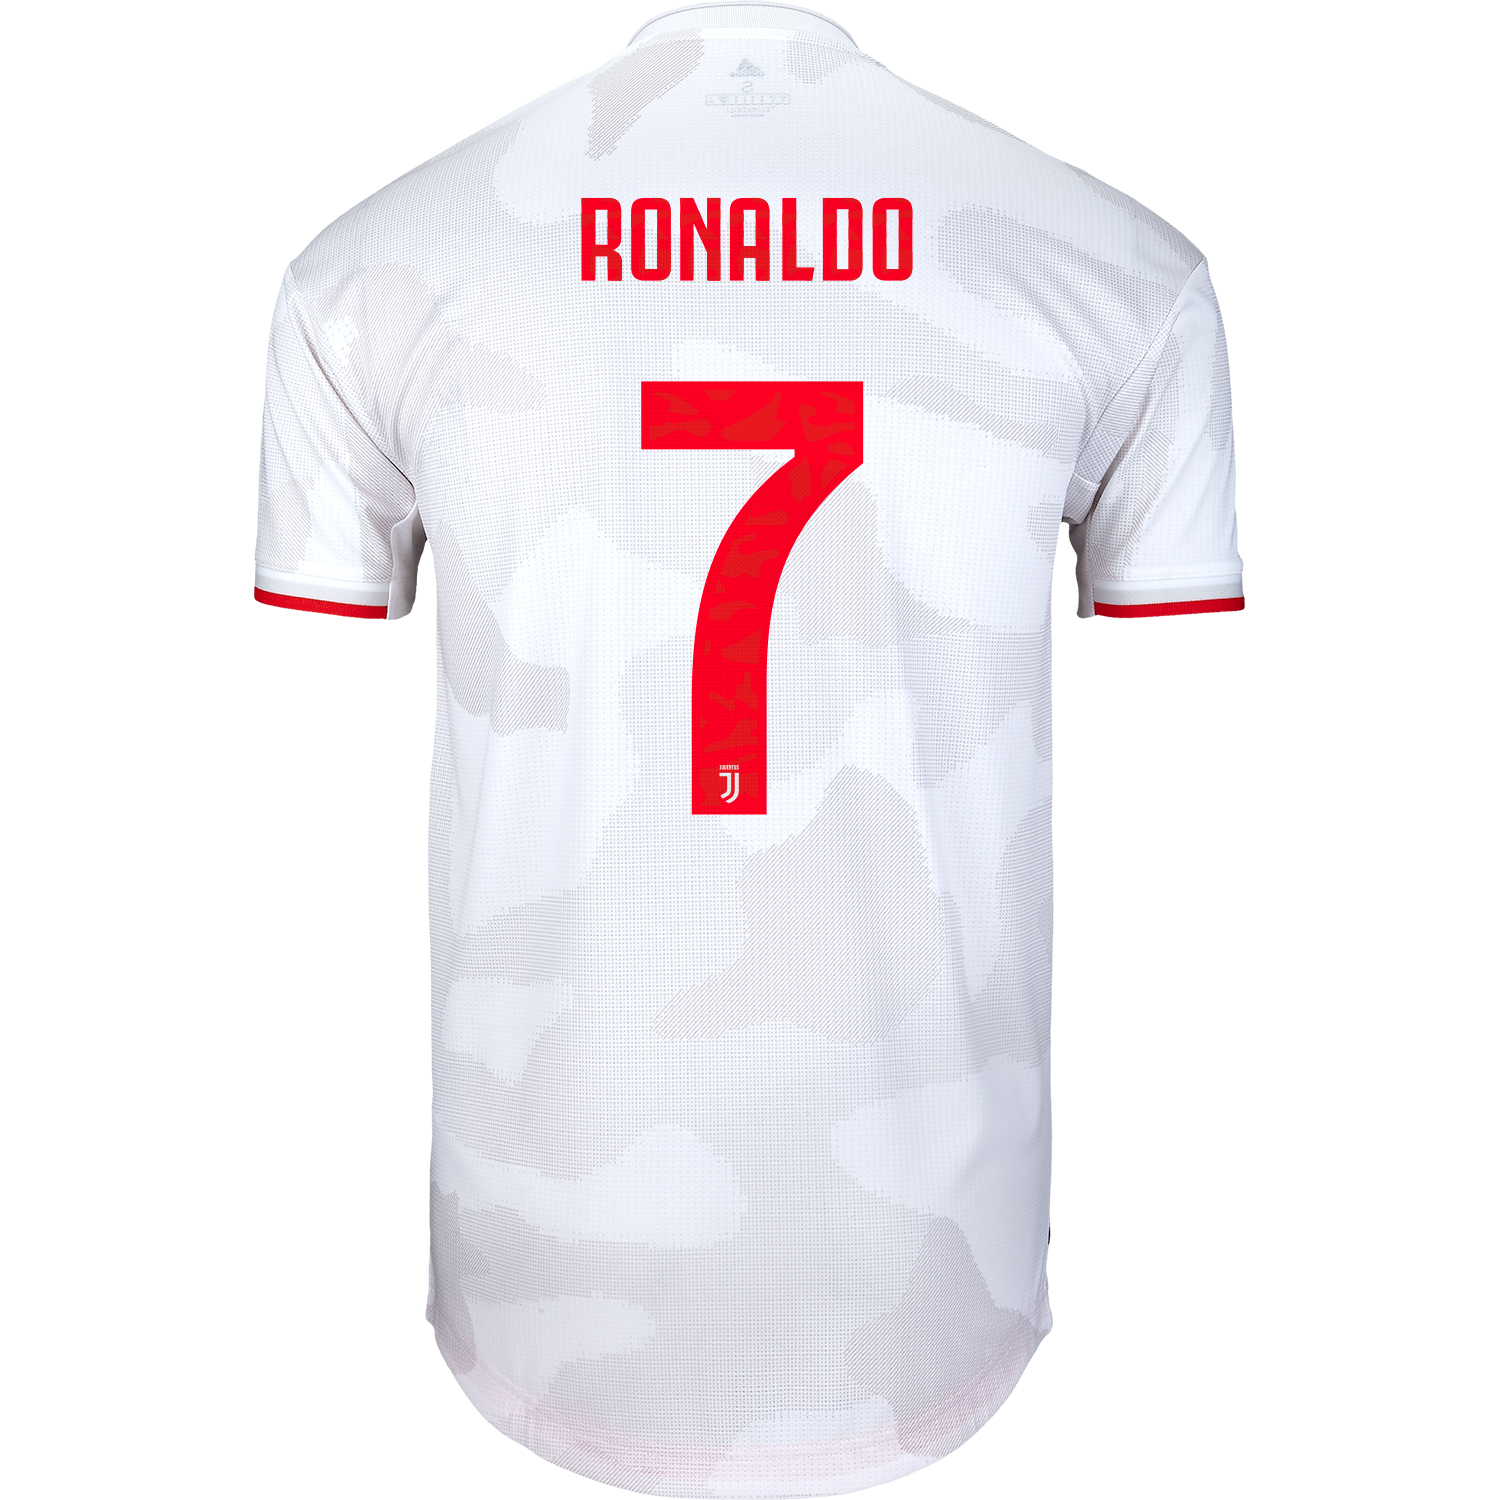 authentic ronaldo jersey